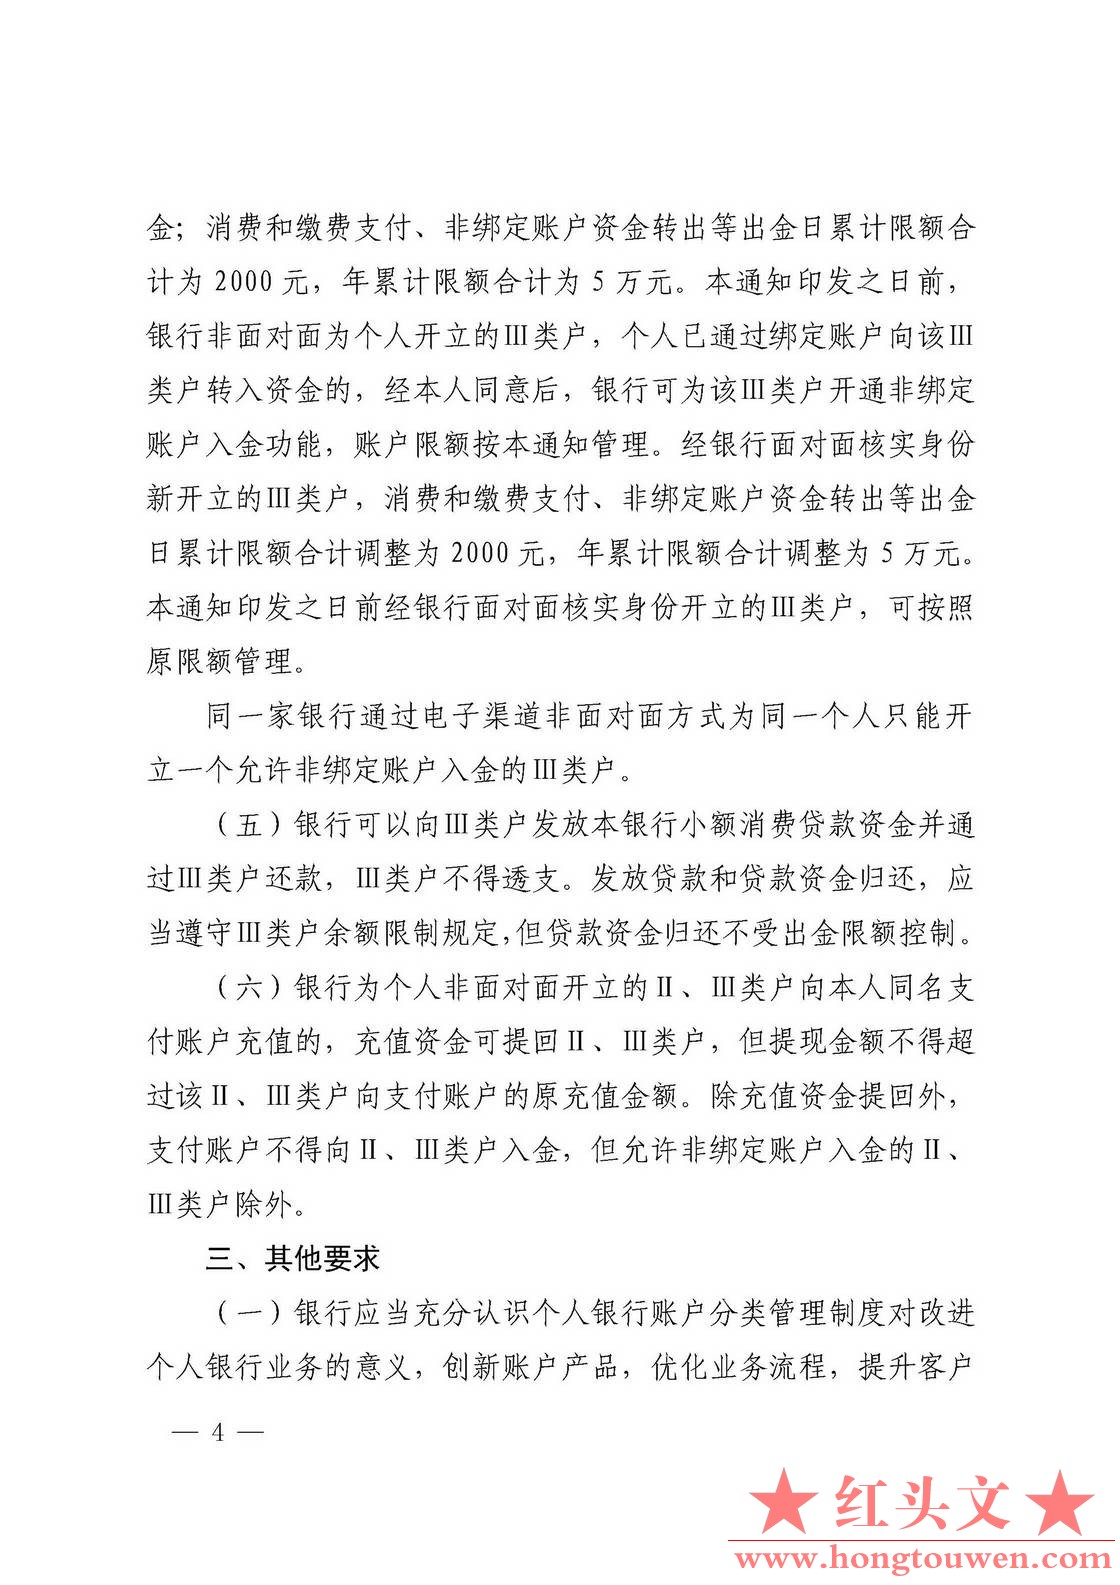 银发[2018]16号-中国人民银行关于改进个人银行账户分类管理有关事项的通知_页面_4.jpg.jpg